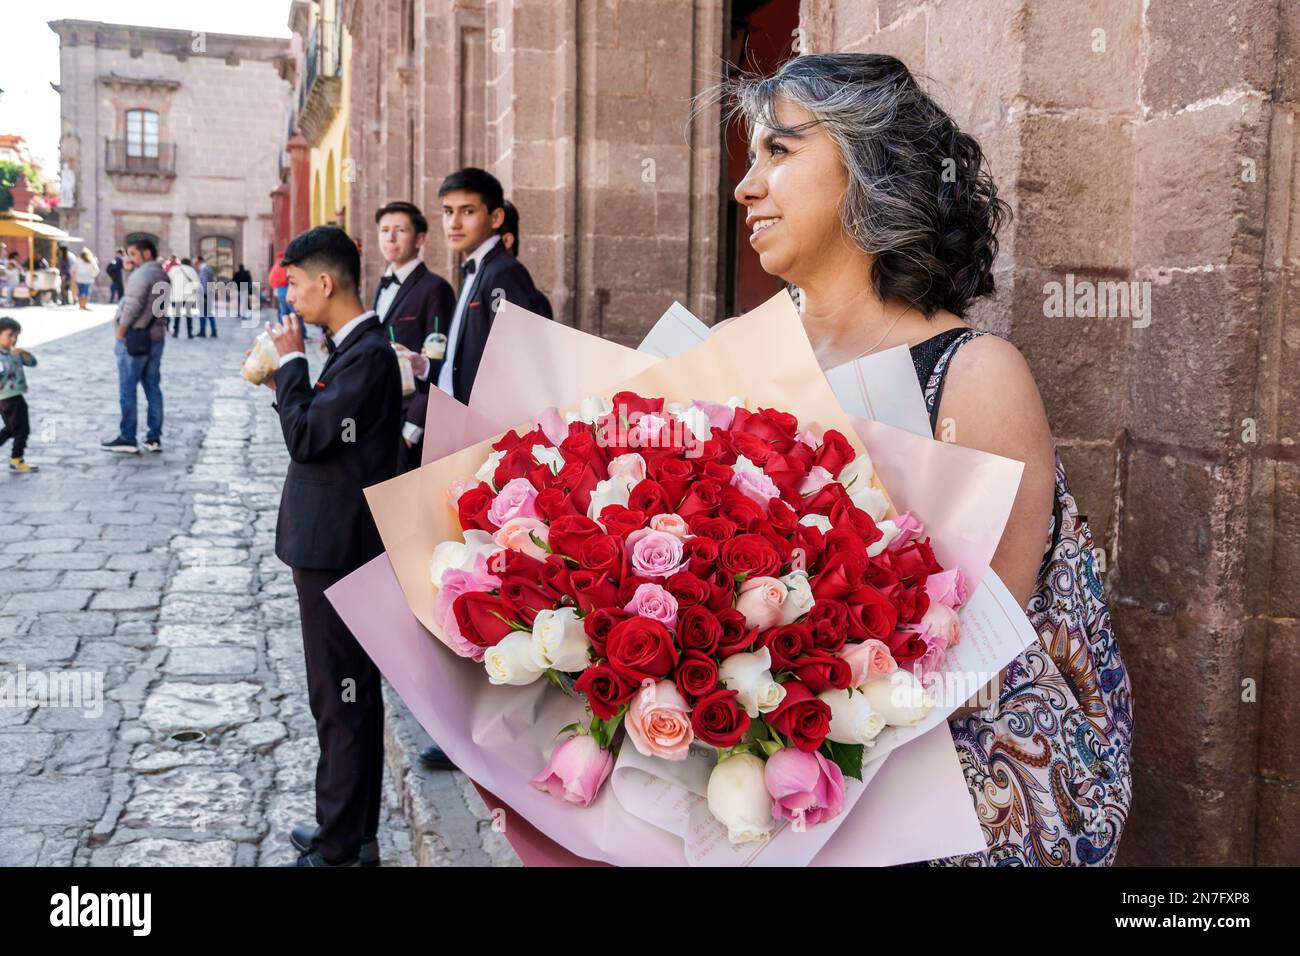 San Miguel de Allende Guanajuato Mexique, Historico Centre historique central Zona Centro, quinceanera arrivée de l'âge tradition partie, tenant des fleurs roses Banque D'Images